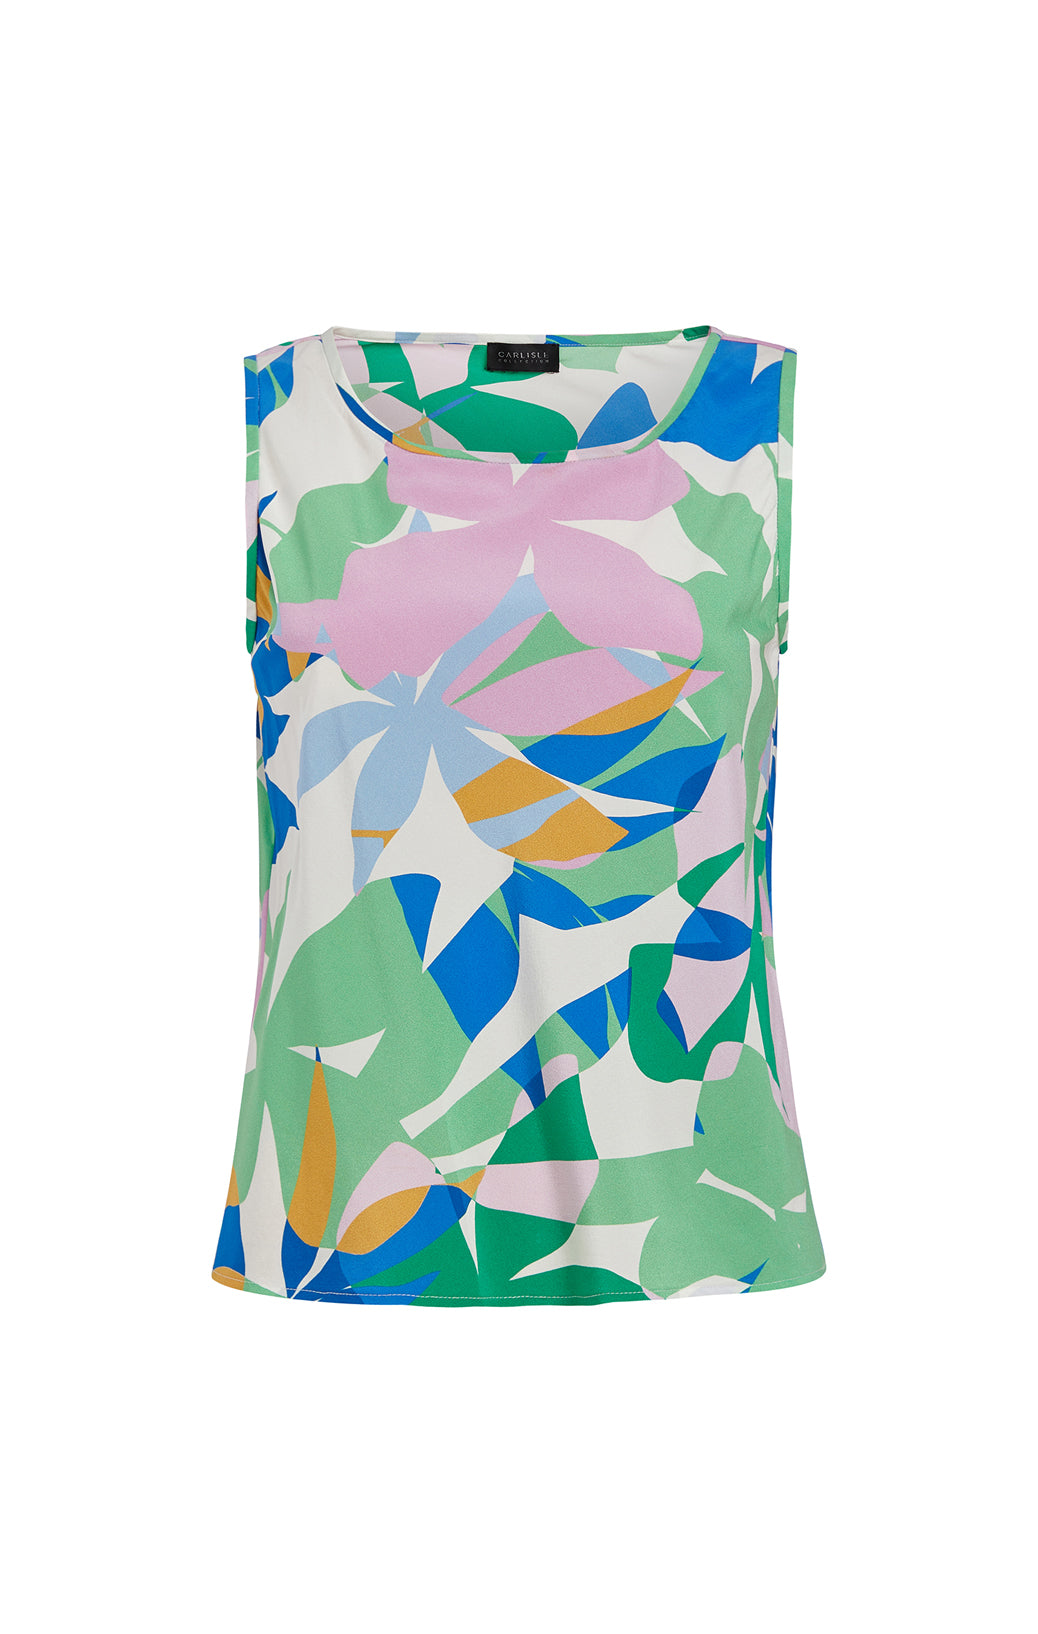 Veranda - Flower & Stripe Print Skirt - Product Image